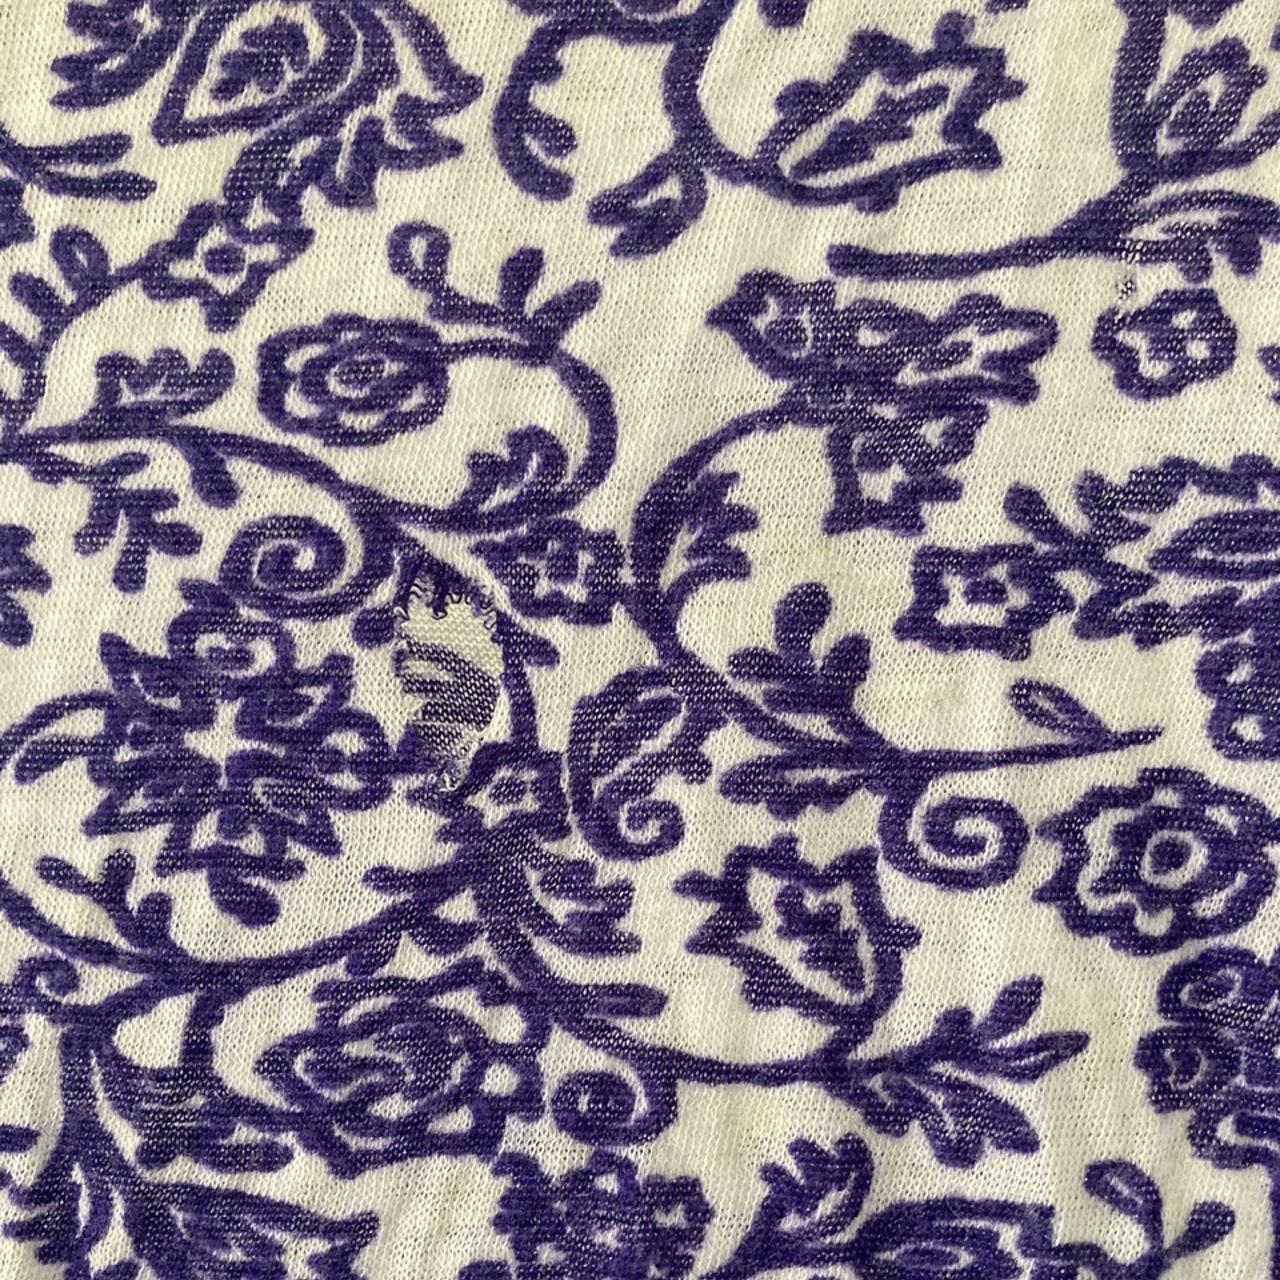 Velvet Women's White and Purple Shirt (3)